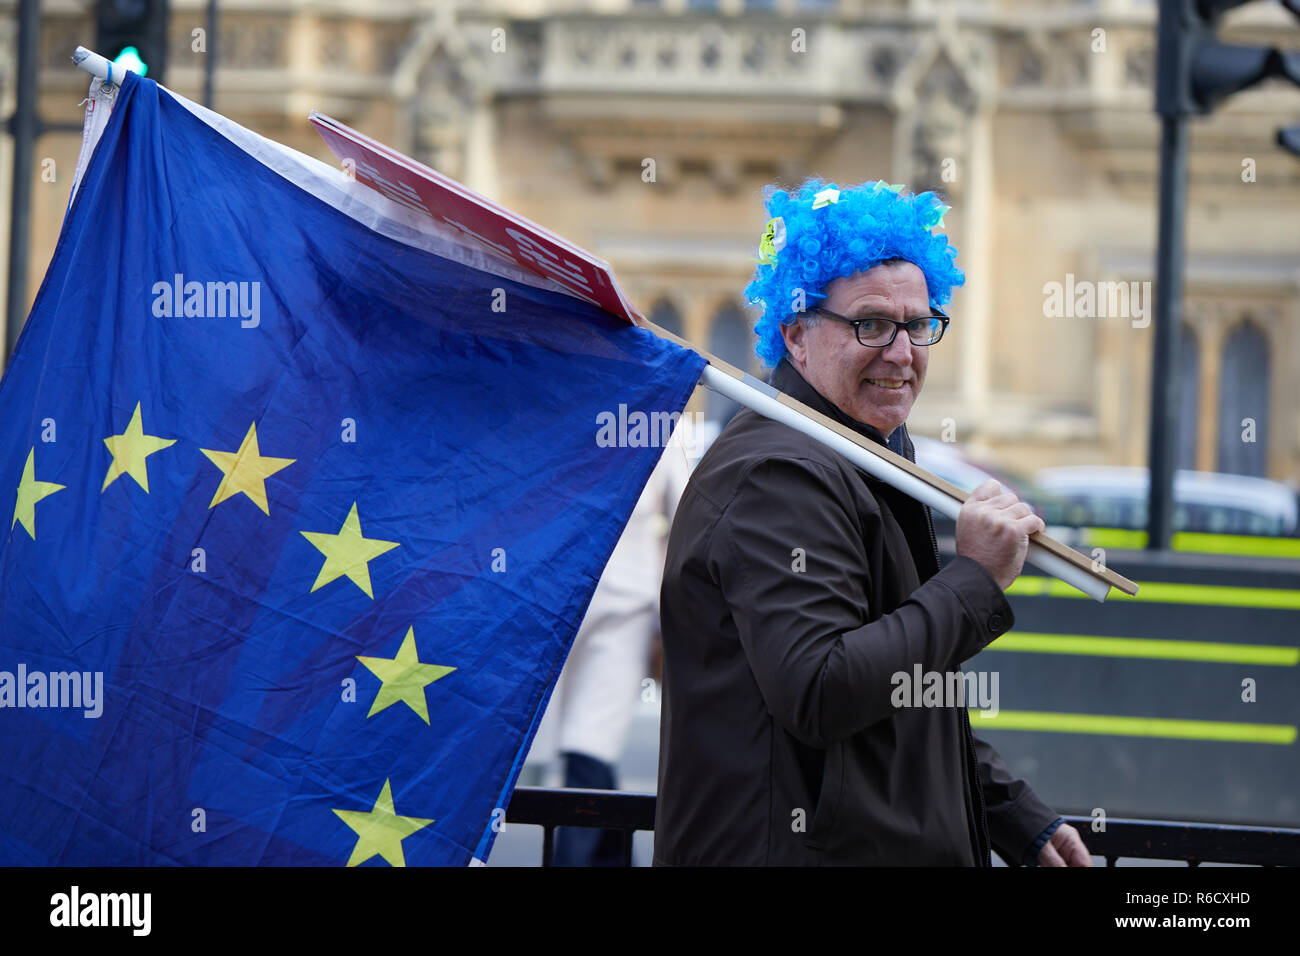 Londra, Regno Unito. 4° dic, 2018. Un sostenitore rimangono con una parrucca tenendo una bandiera UE al di fuori del Parlamento. Credito: Kevin J. Frost/Alamy Live News Foto Stock